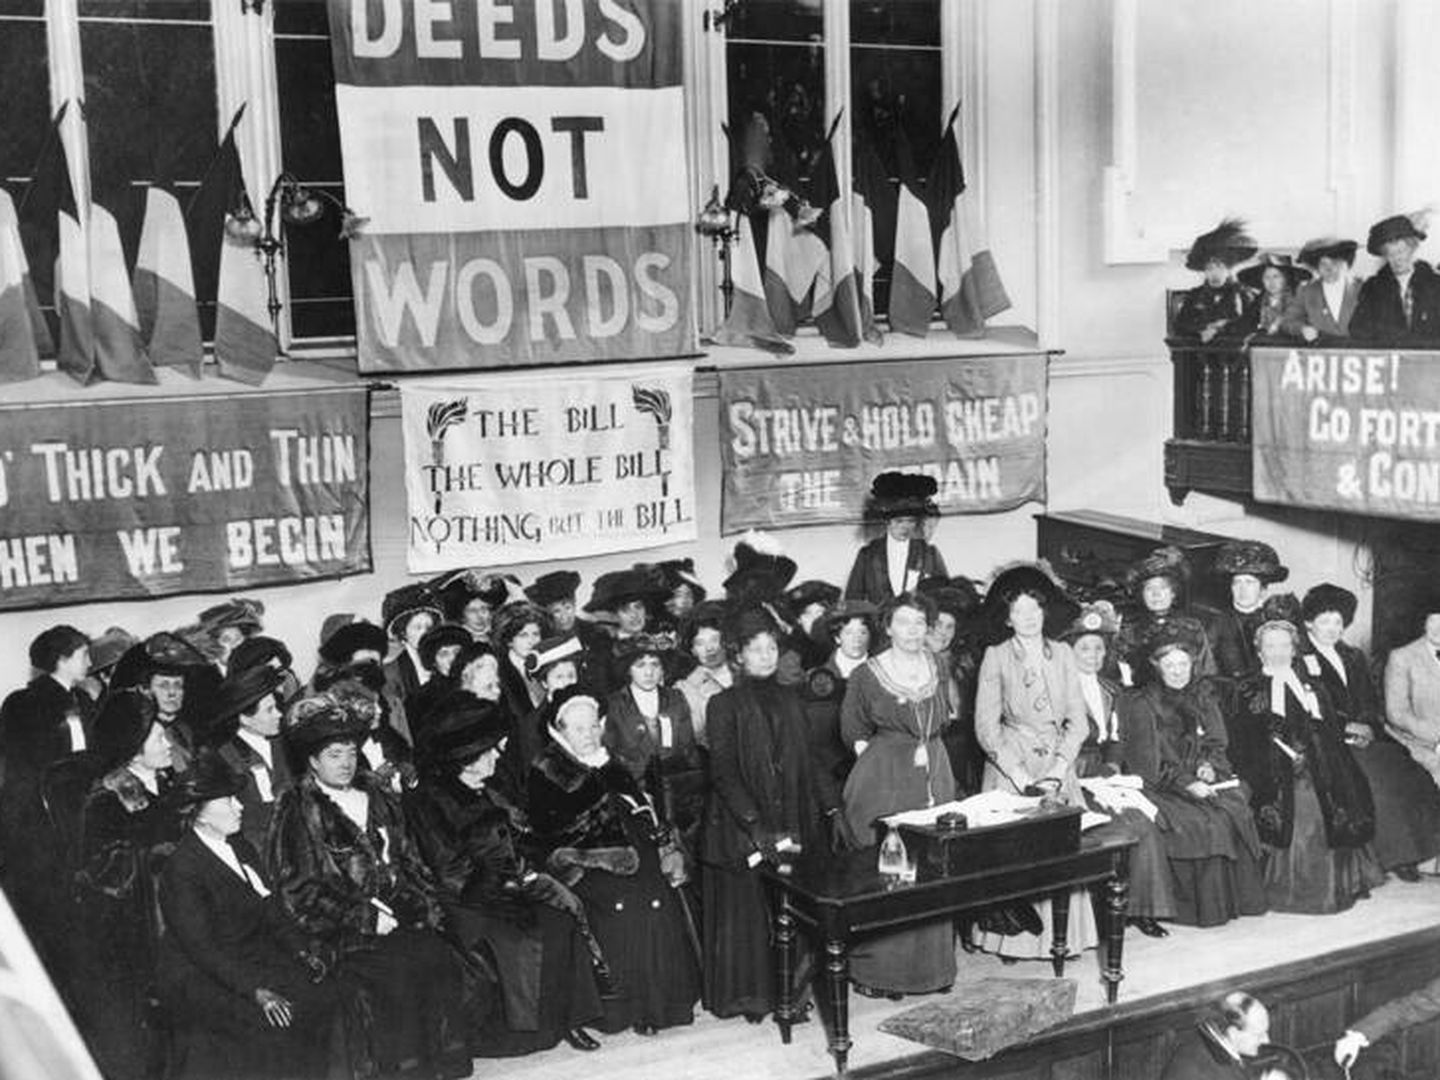 Mujeres sufragistas inglesas piden el derecho a voto en 1908. (Imagen de archivo)